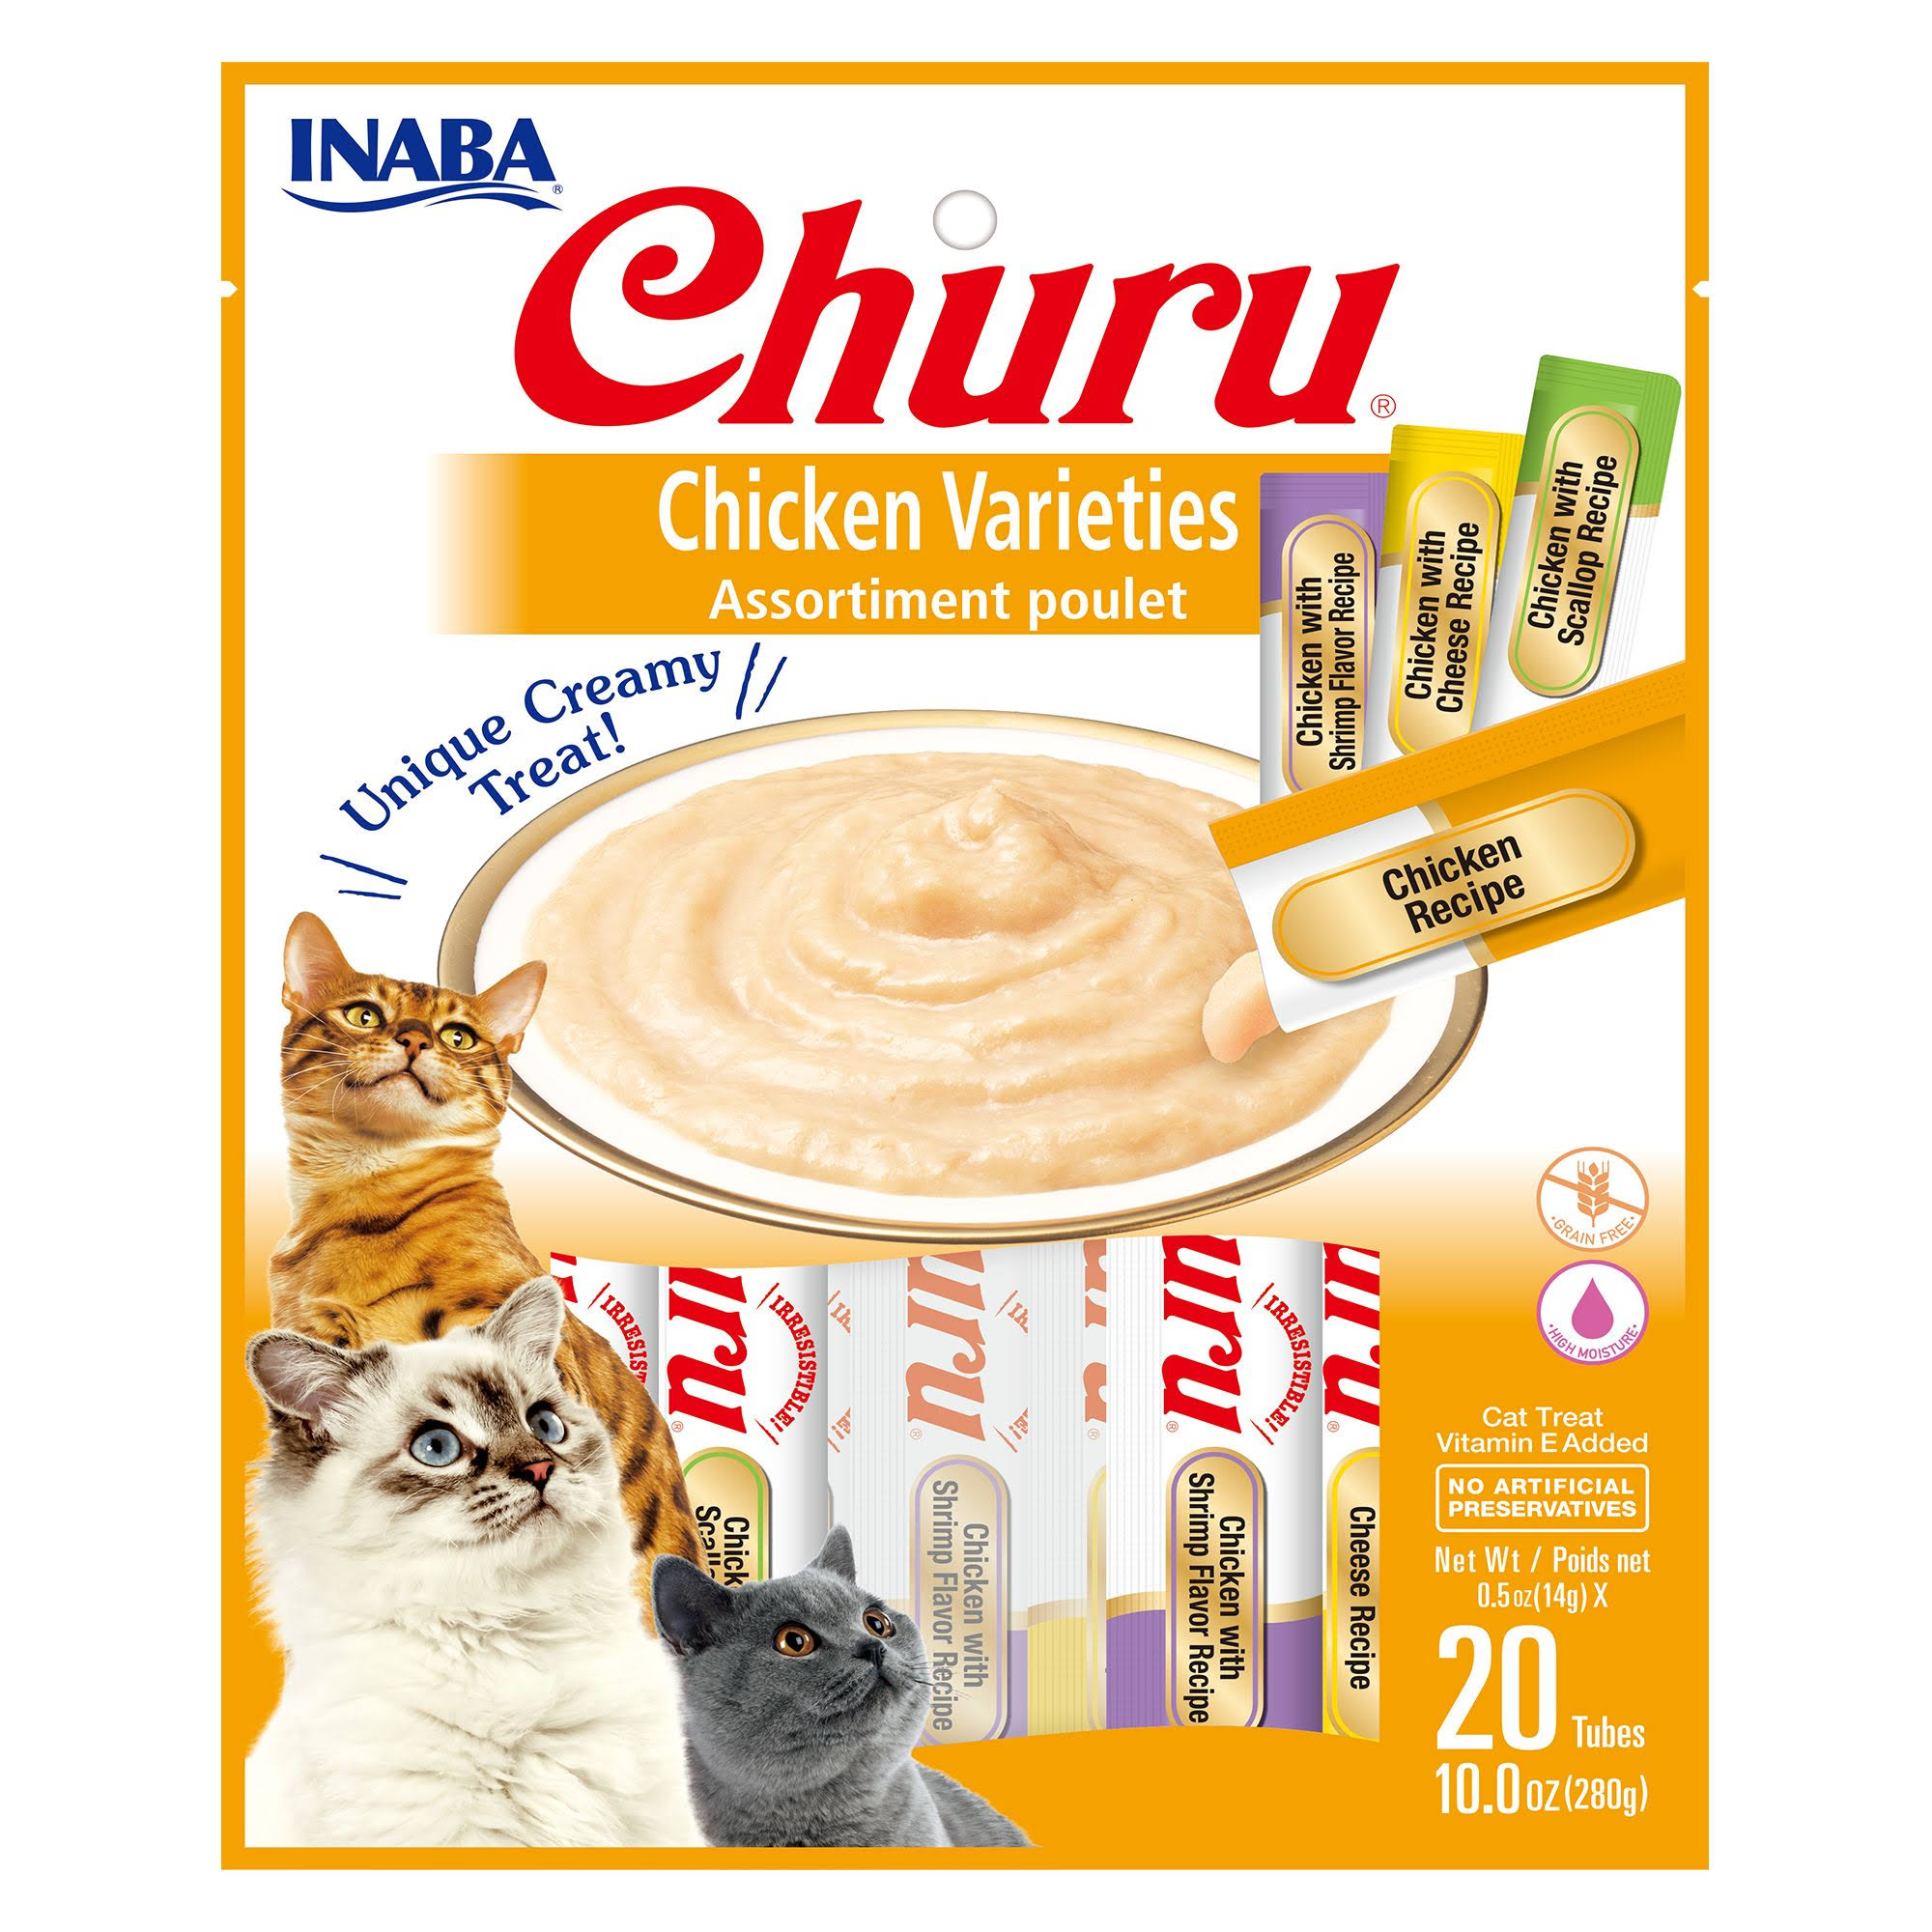 Inaba Churu Creamy Puree Cat Treats - Chicken Varieties, 20 pack